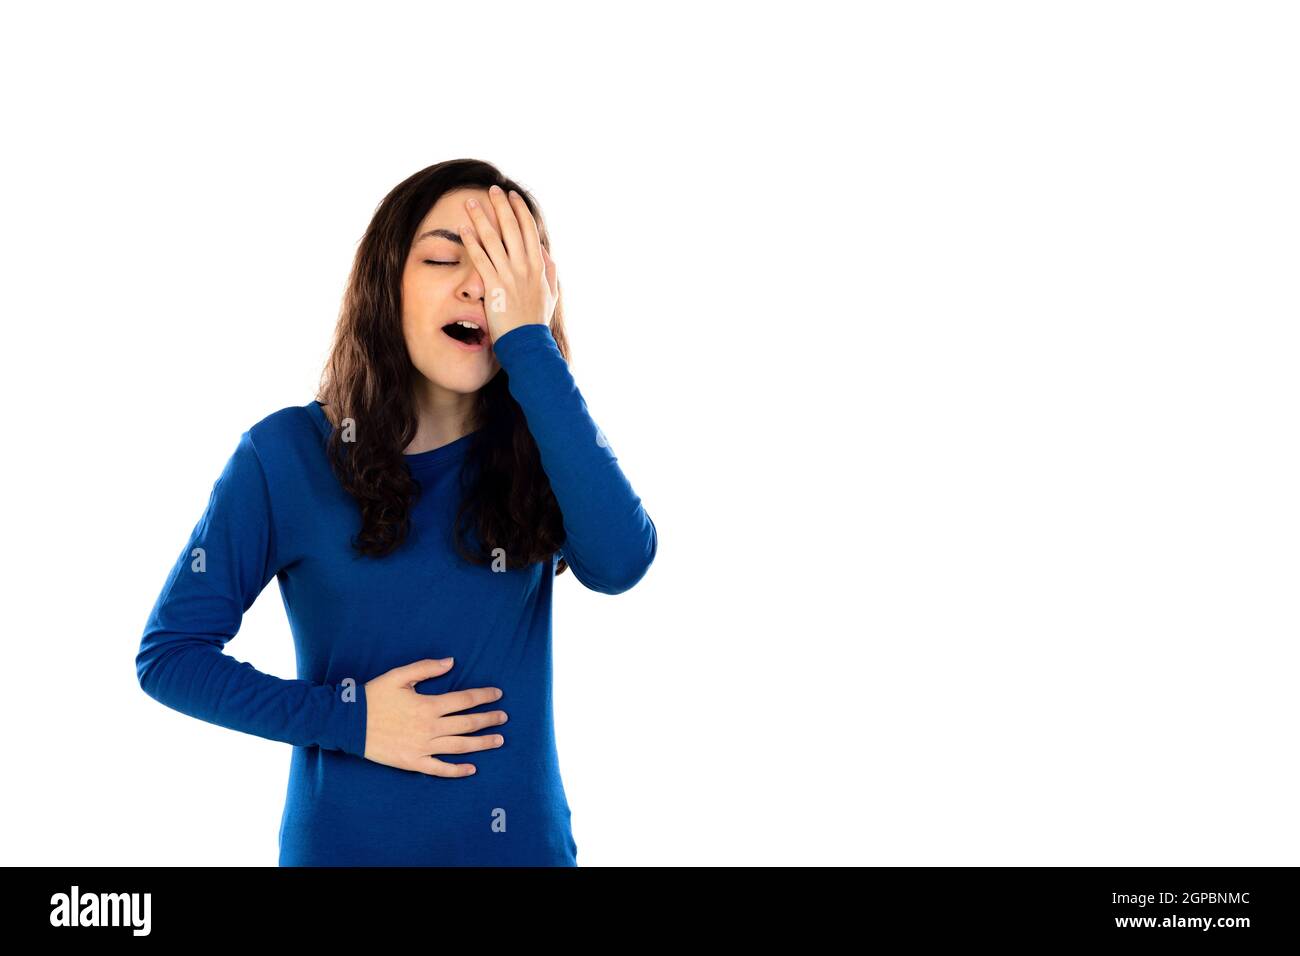 Liebenswert Teenager-Mädchen mit blauen Pullover isoliert auf einem weißen Hintergrund Stockfoto